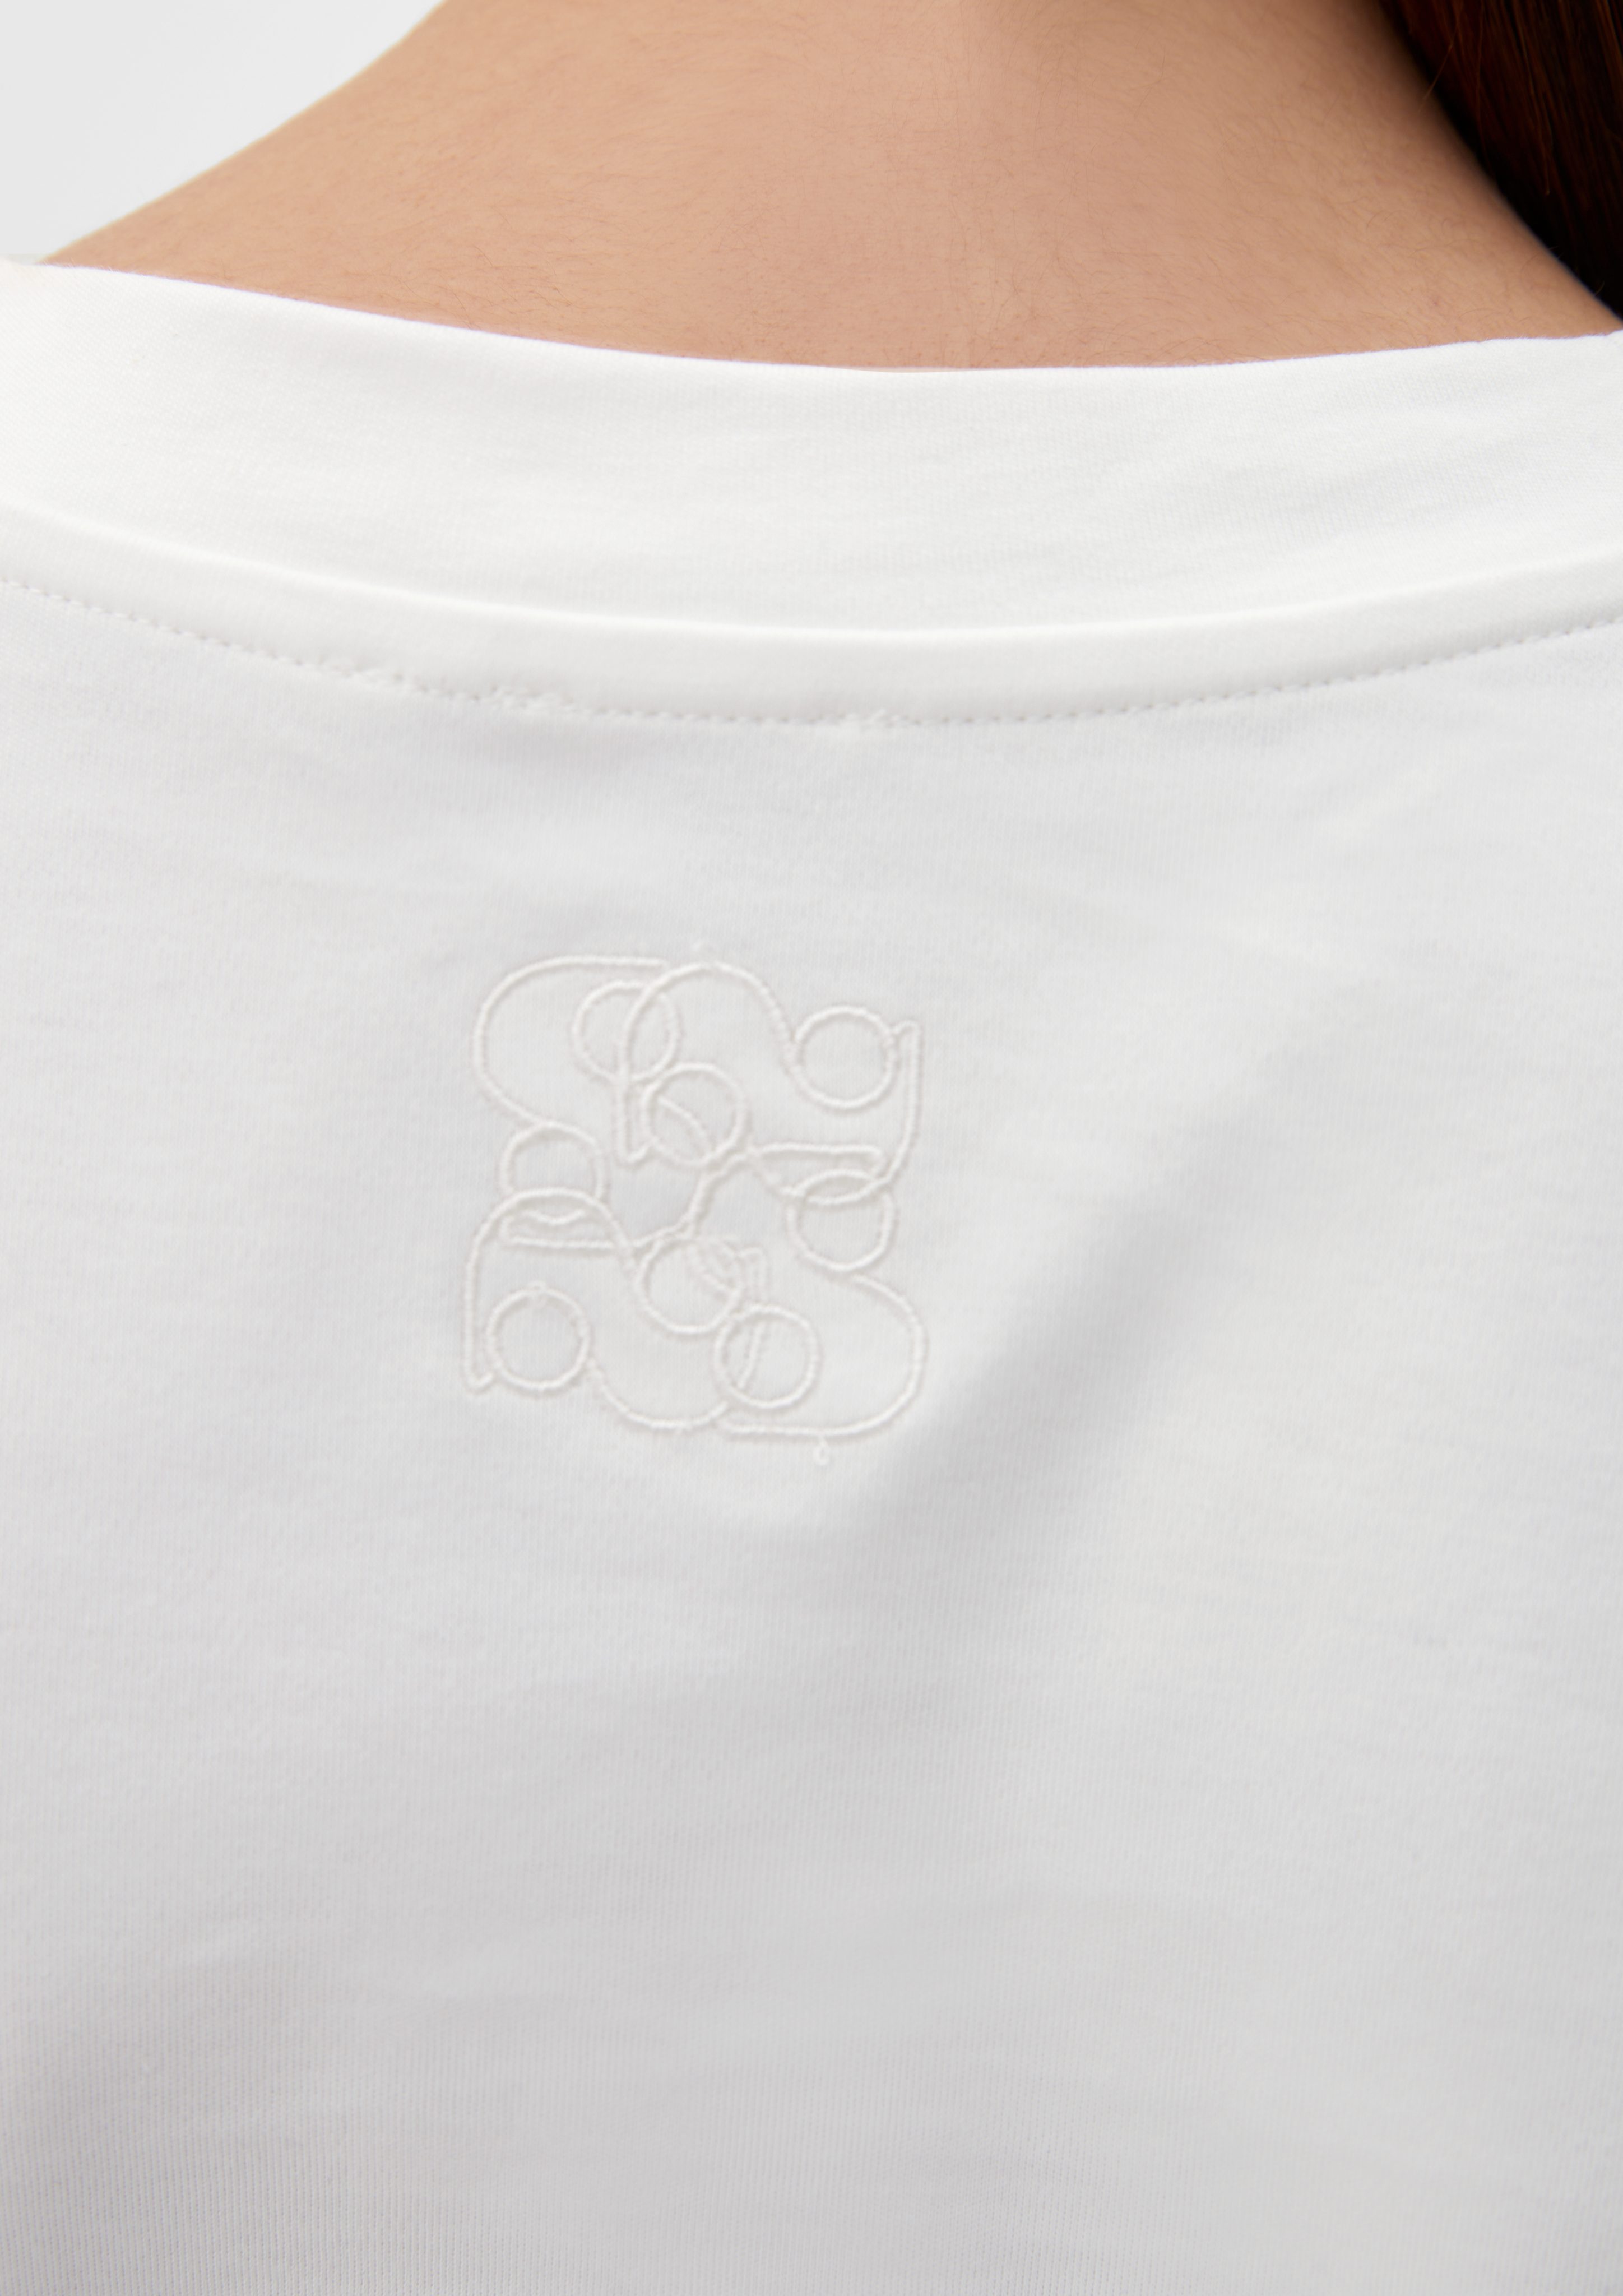 s.Oliver BLACK aus reiner ecru LABEL Stickerei Kurzarmshirt T-Shirt Baumwolle